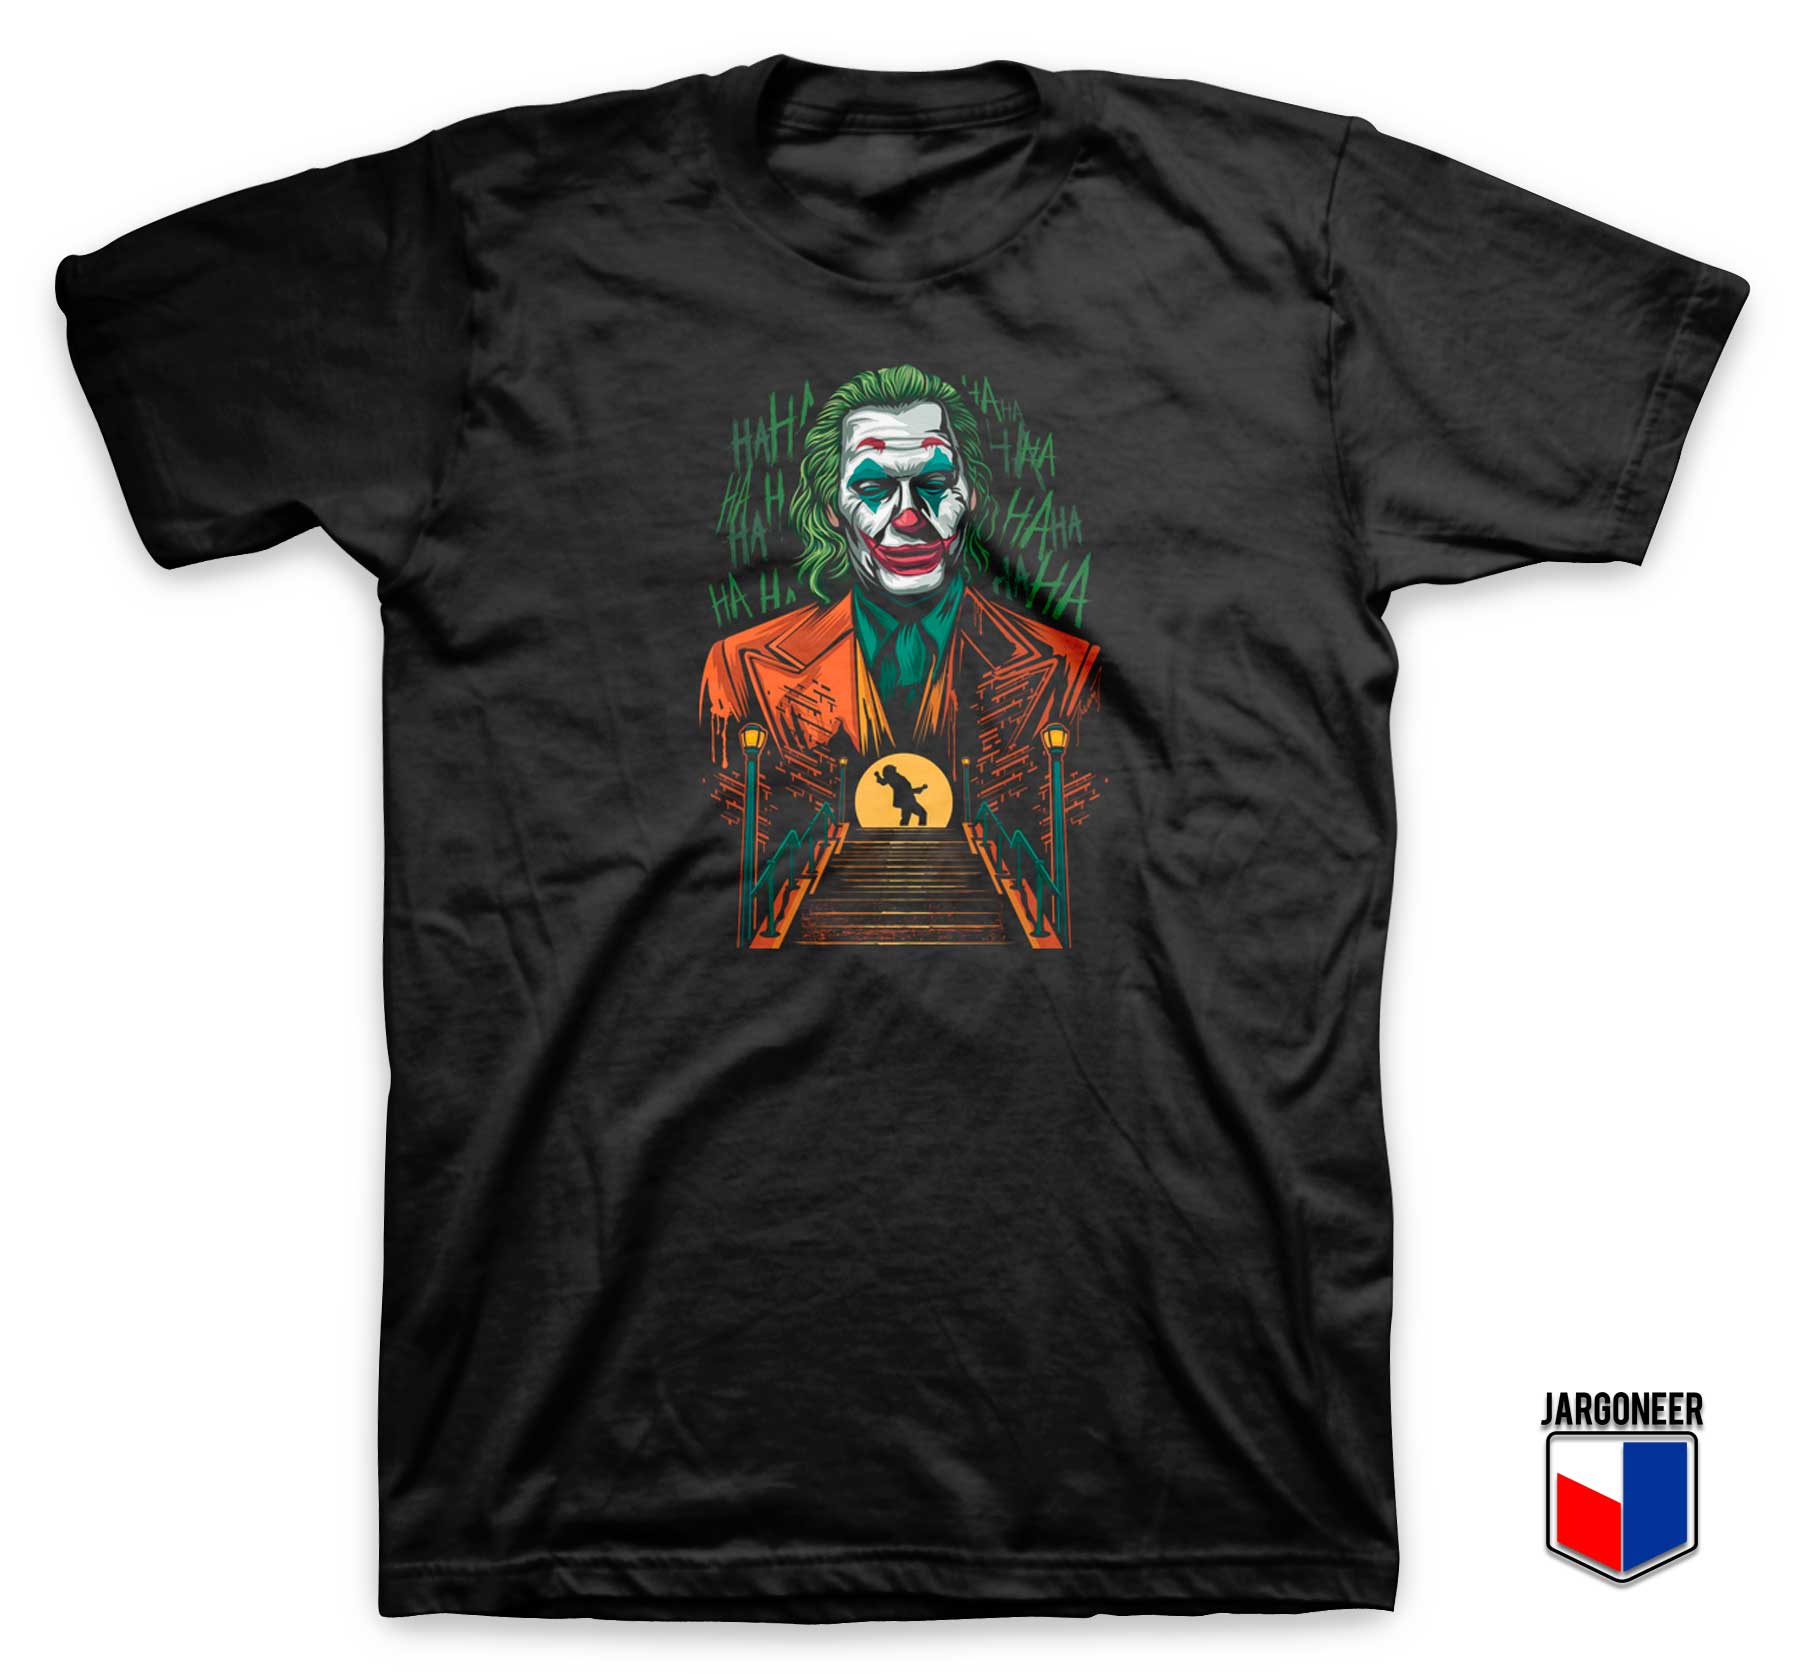 DC Comic Joker Reborn T Shirt - Shop Unique Graphic Cool Shirt Designs